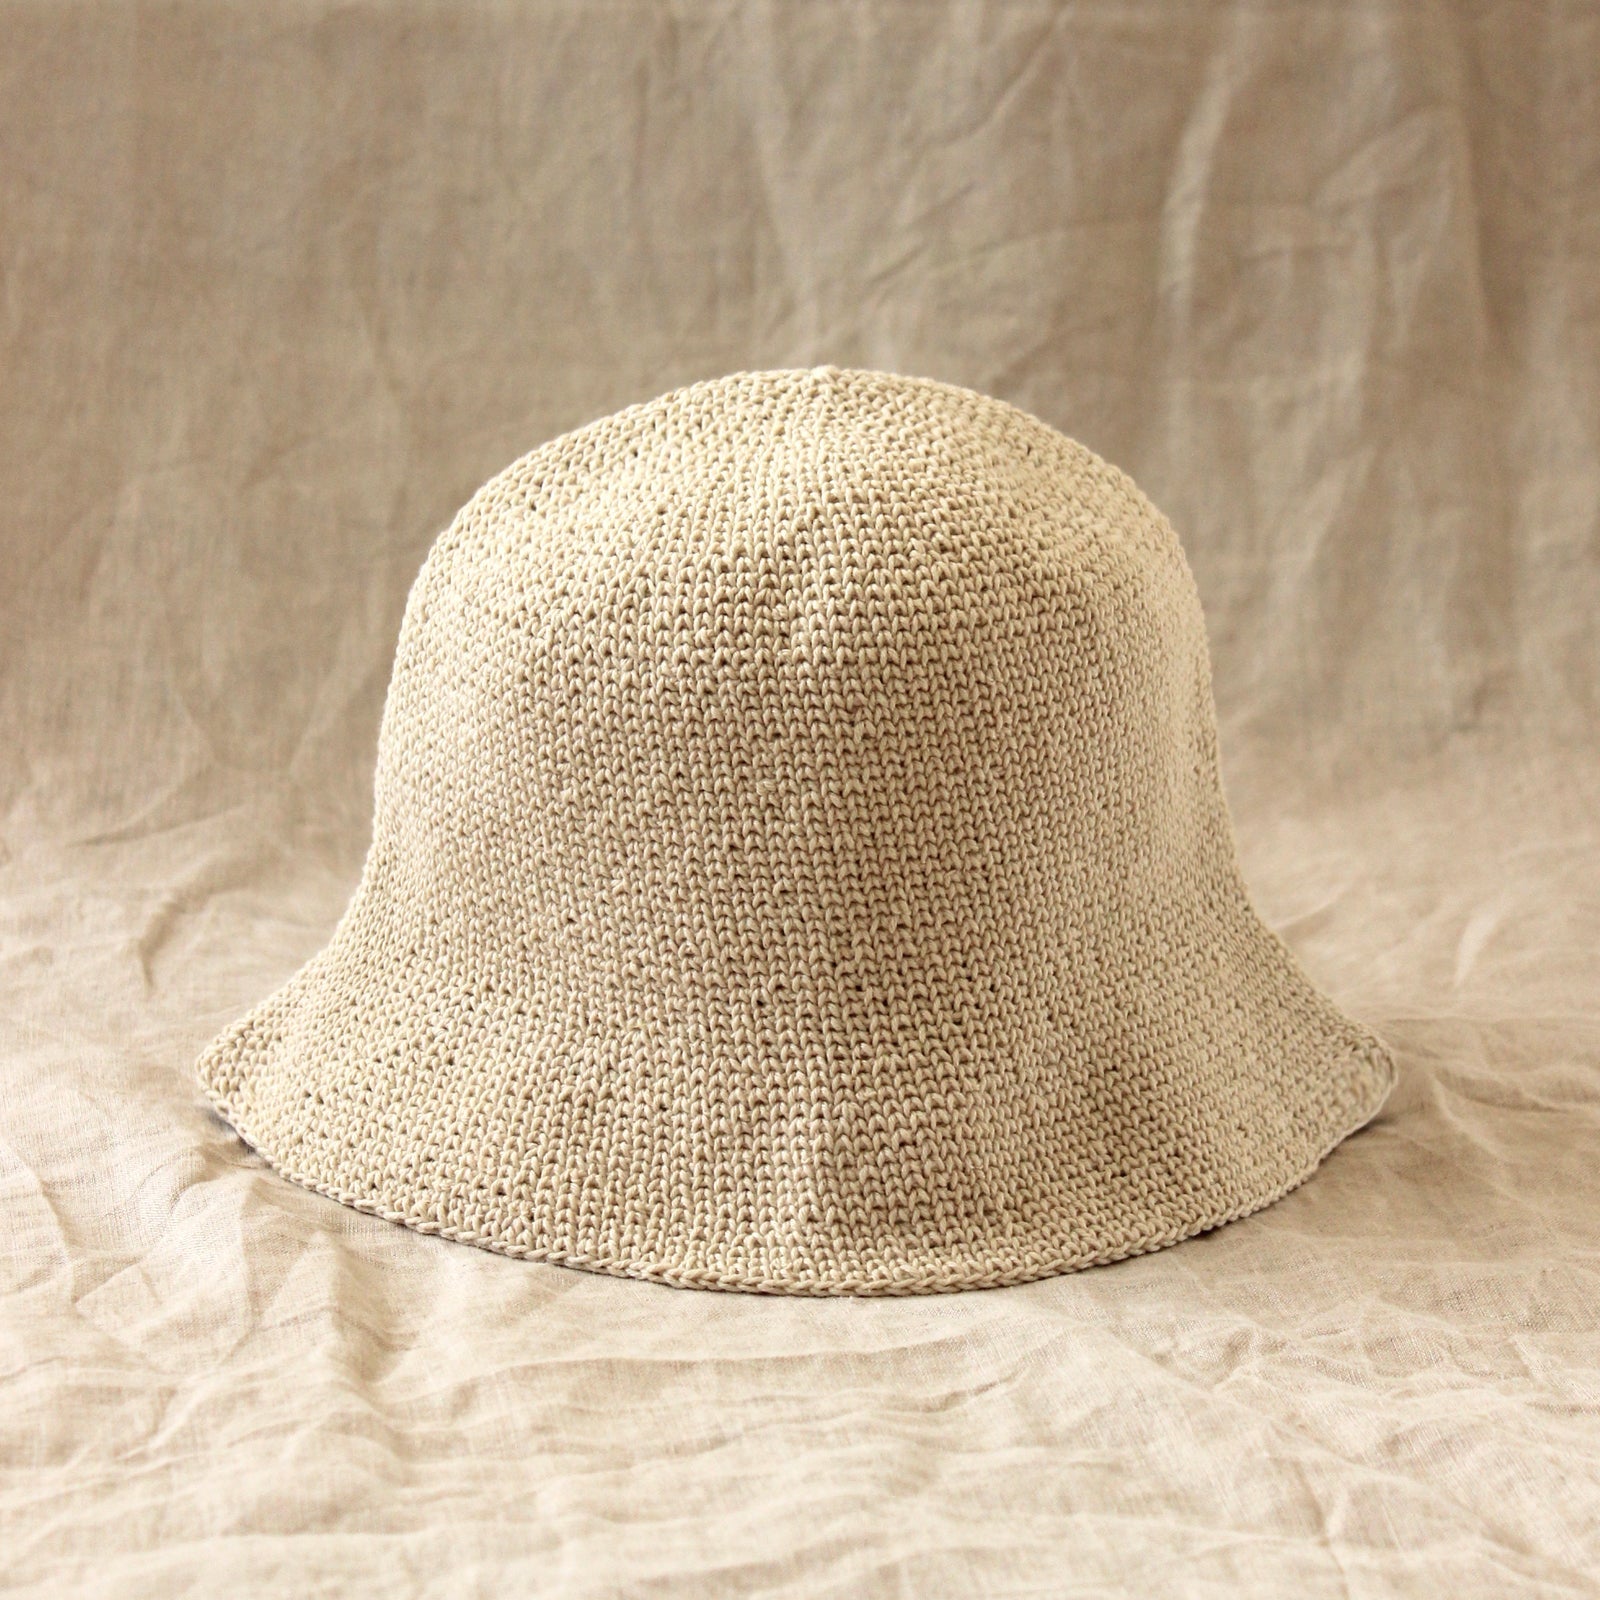 Florette Crochet Bucket Hat - Nude White